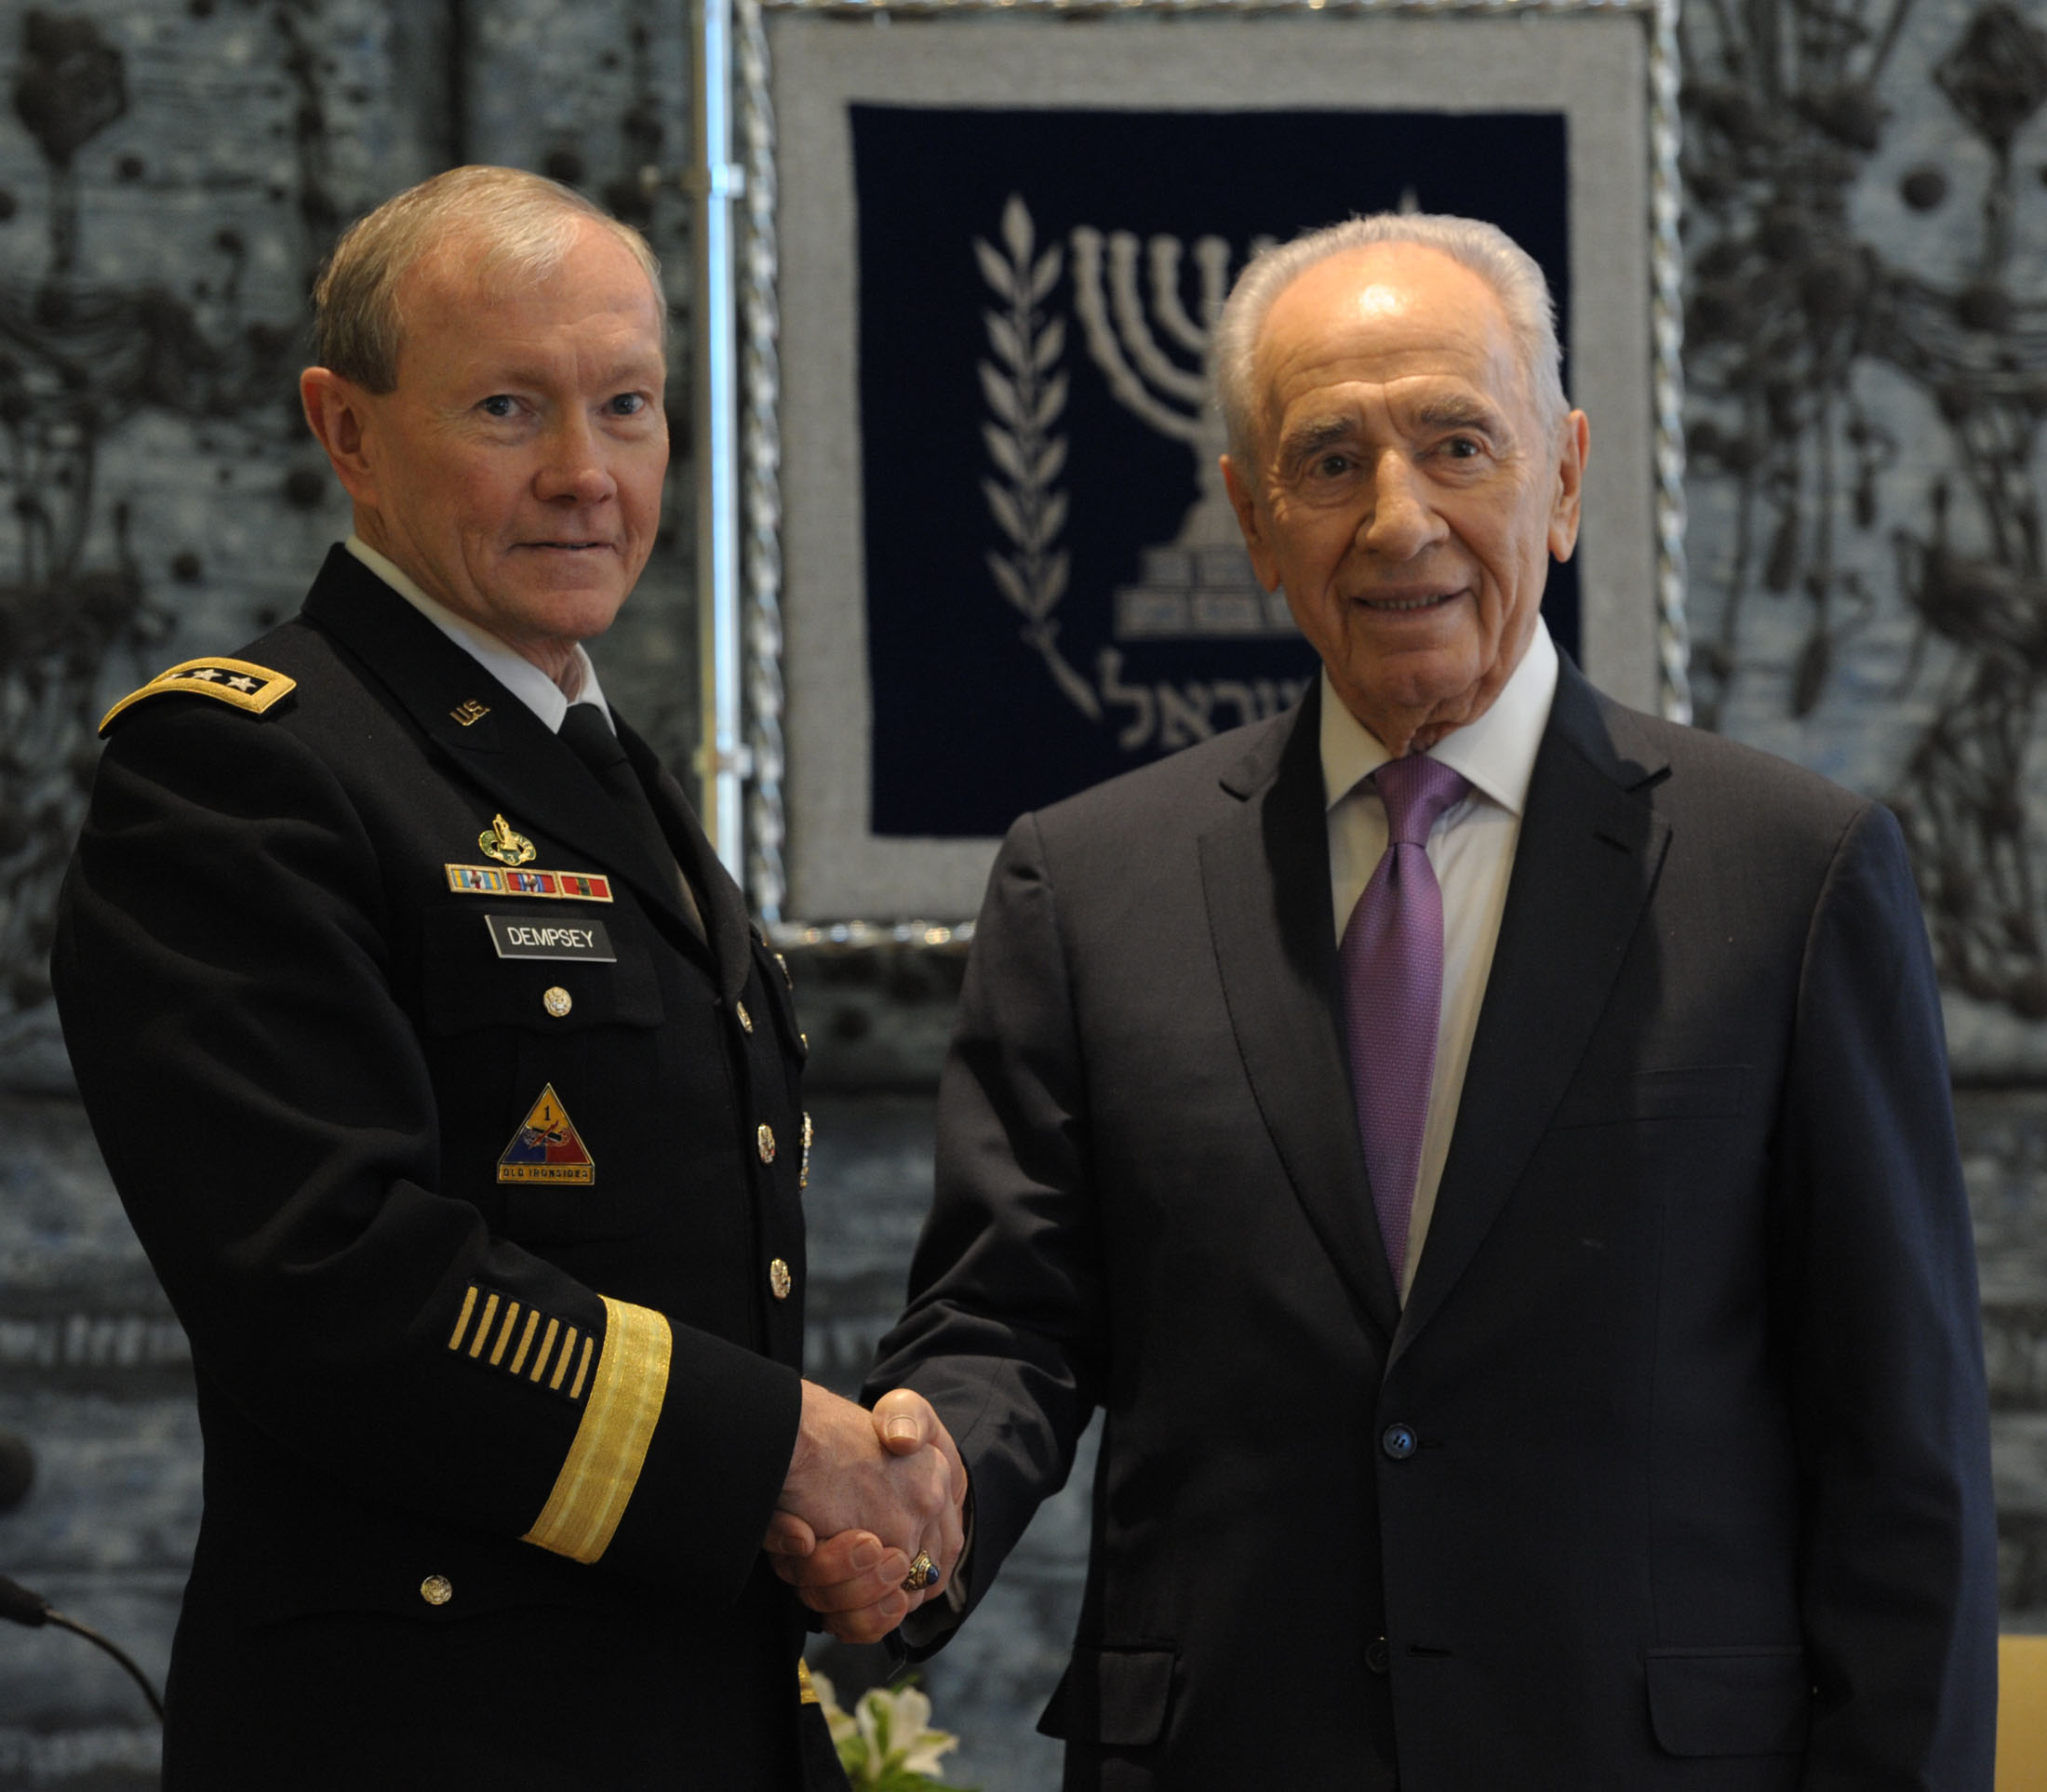 הגנרל דמפסי: "ארה"ב היא שותפתה של ישראל"